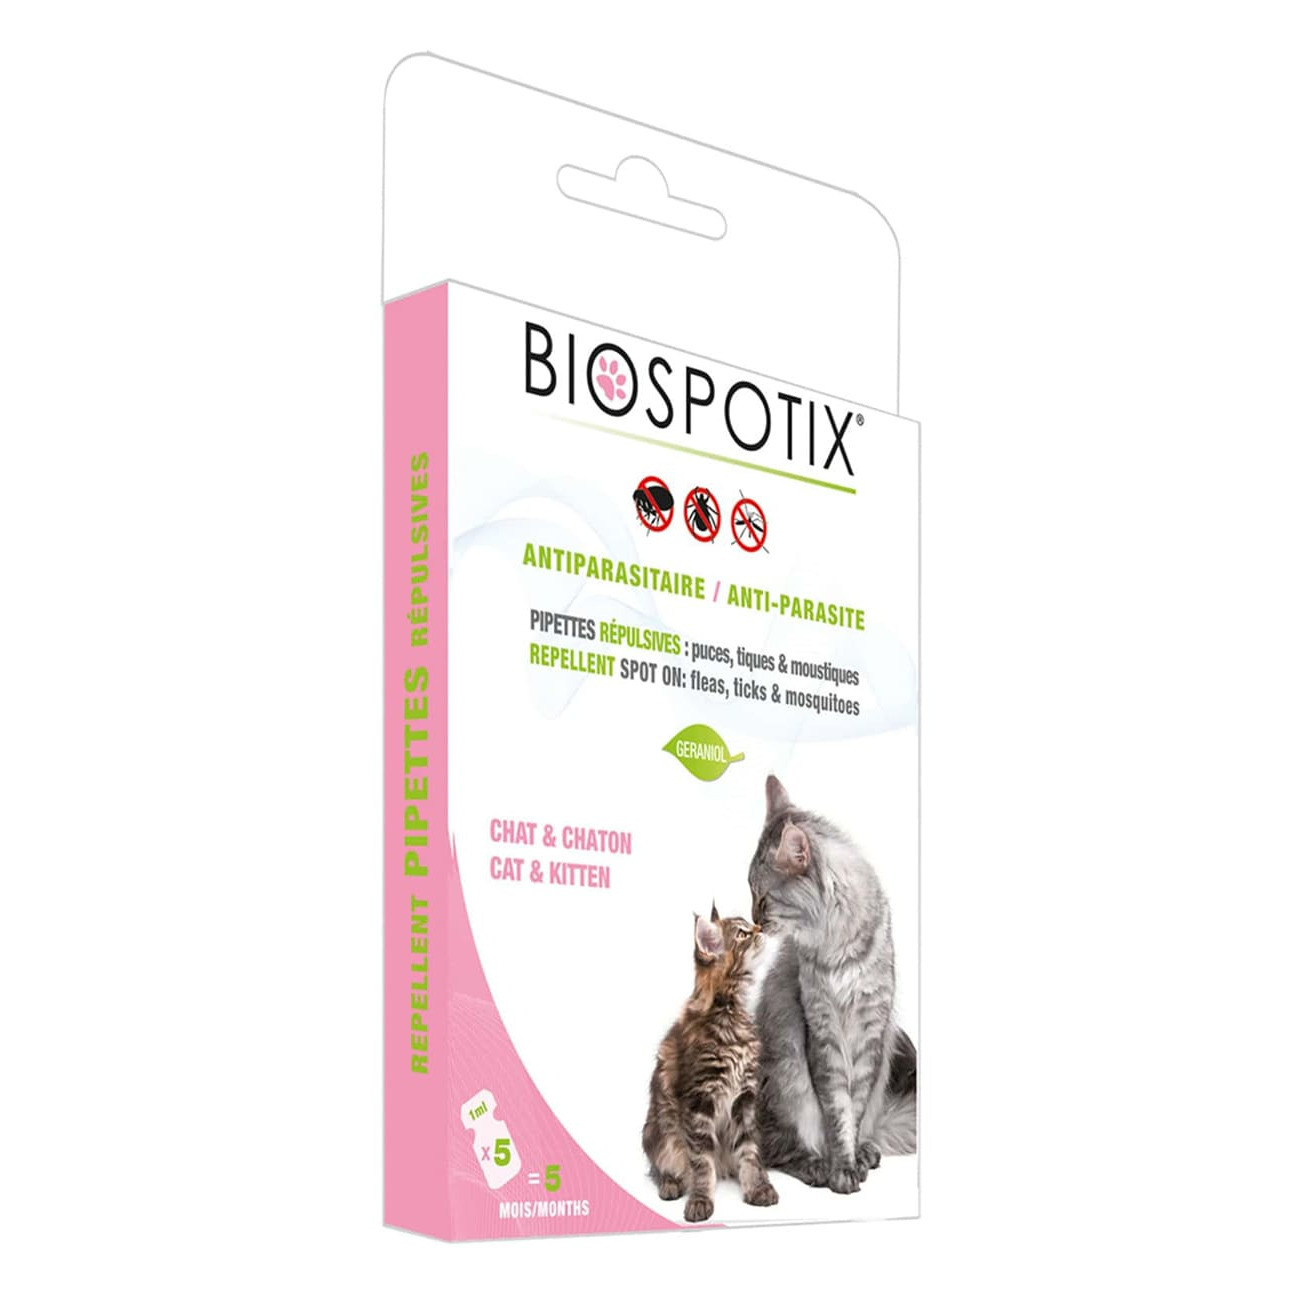 Против клещей для кошек. Таблетки от блох и клещей для кошек. Biospotix ошейник для собак от клещей. Капли от блох для кошек. Капли от клещей для кошек.